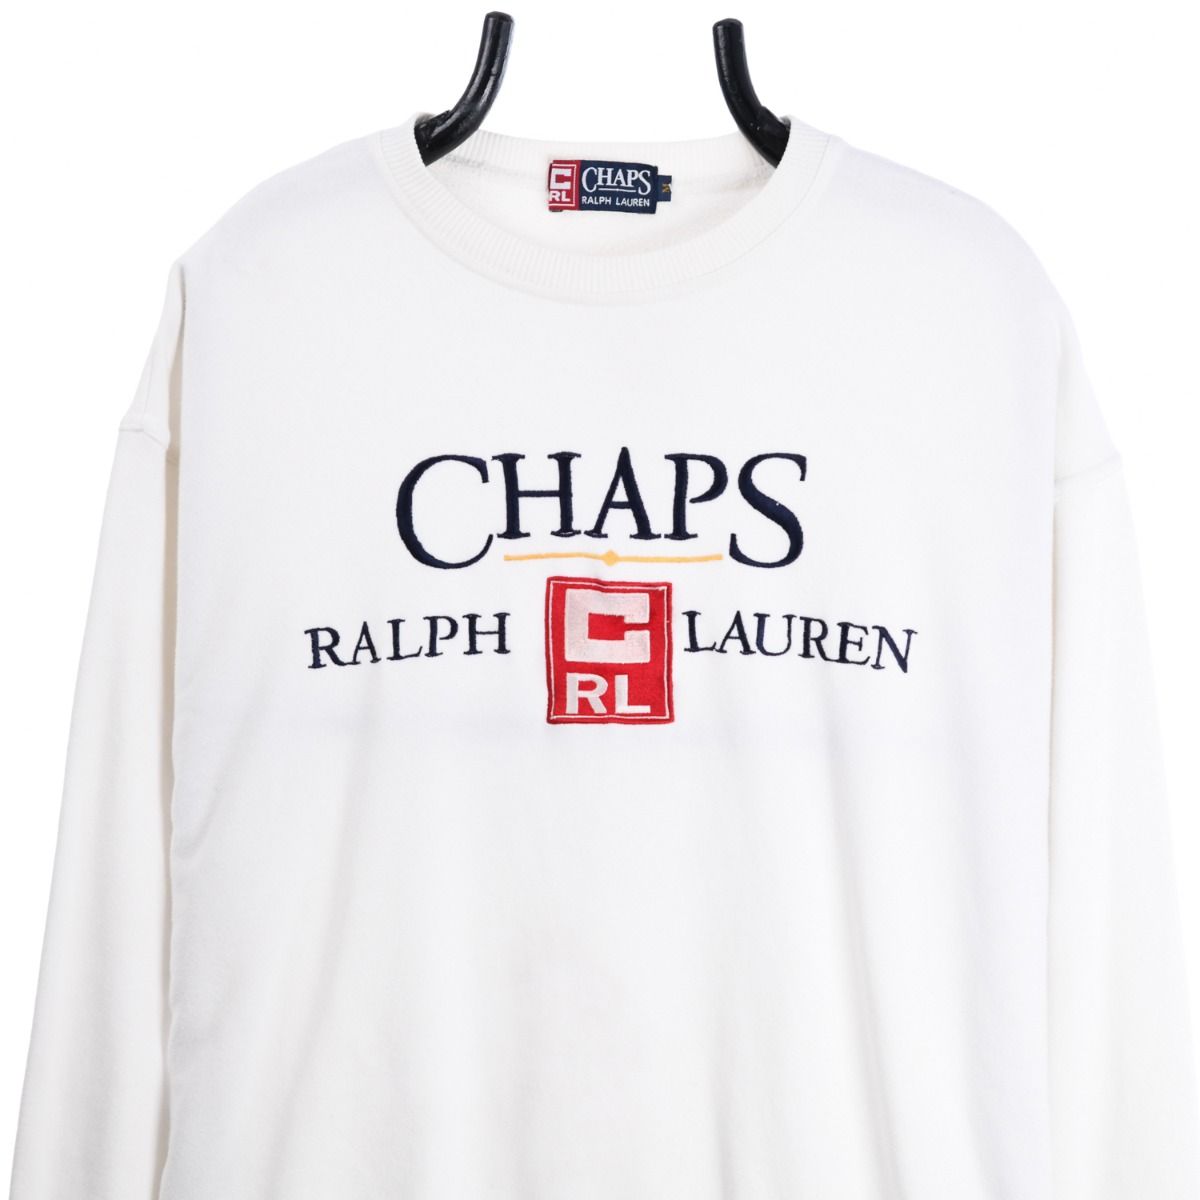 Ralph Lauren Chaps Sweatshirt